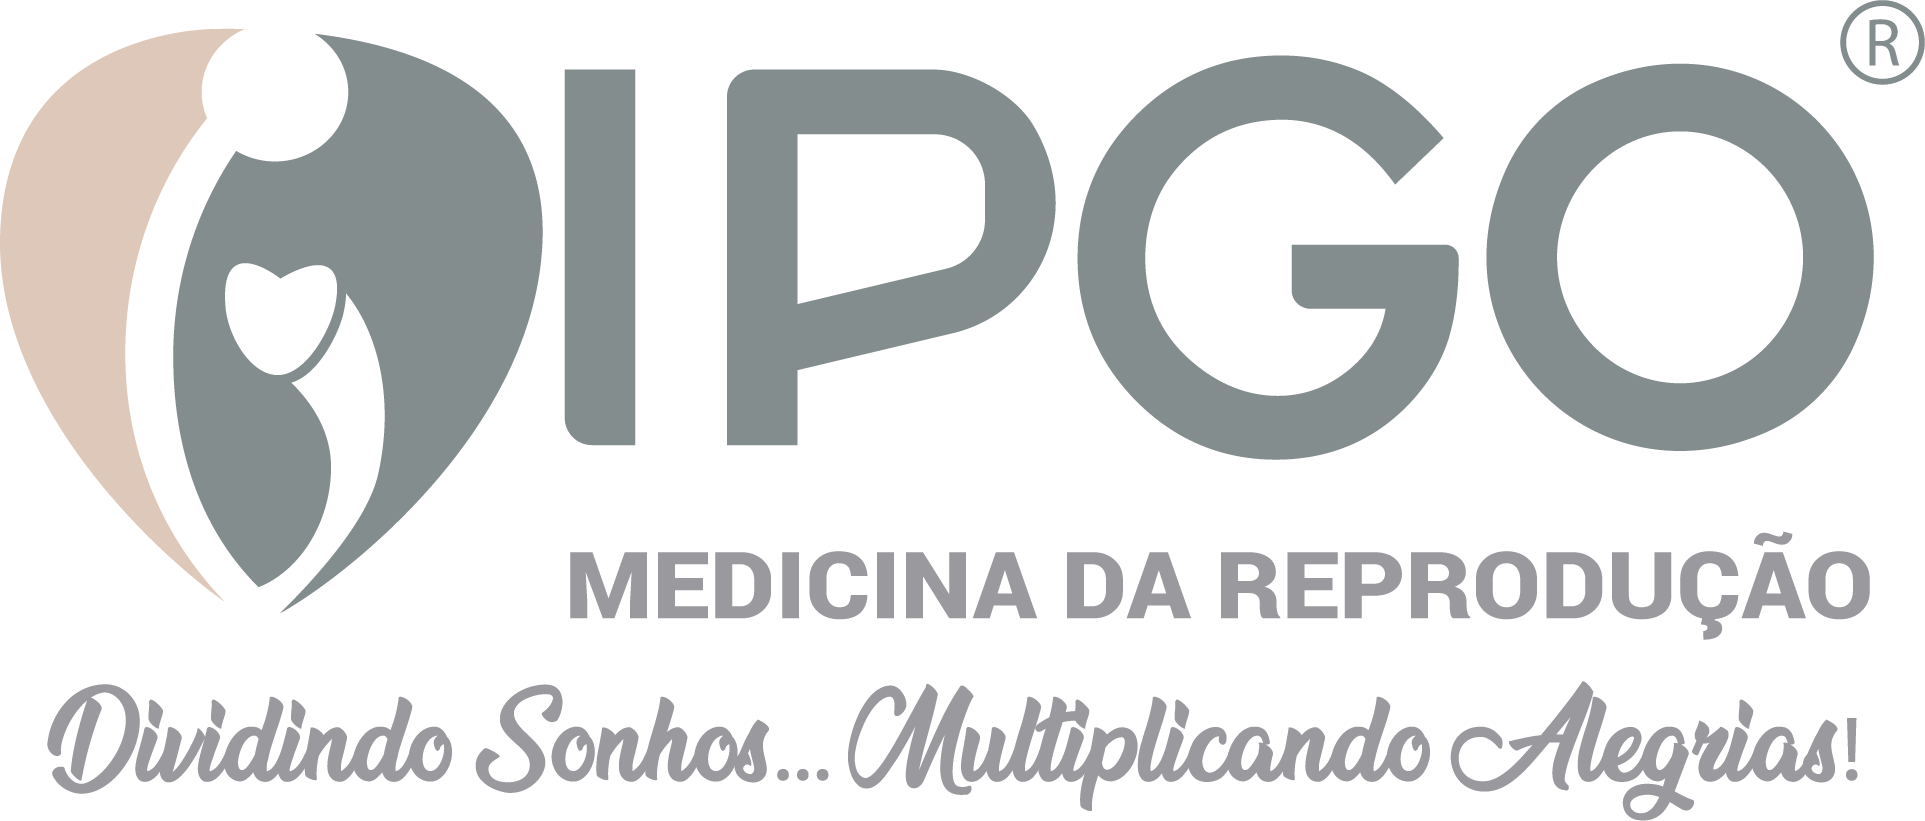 IPGO - Medicina da Reprodução